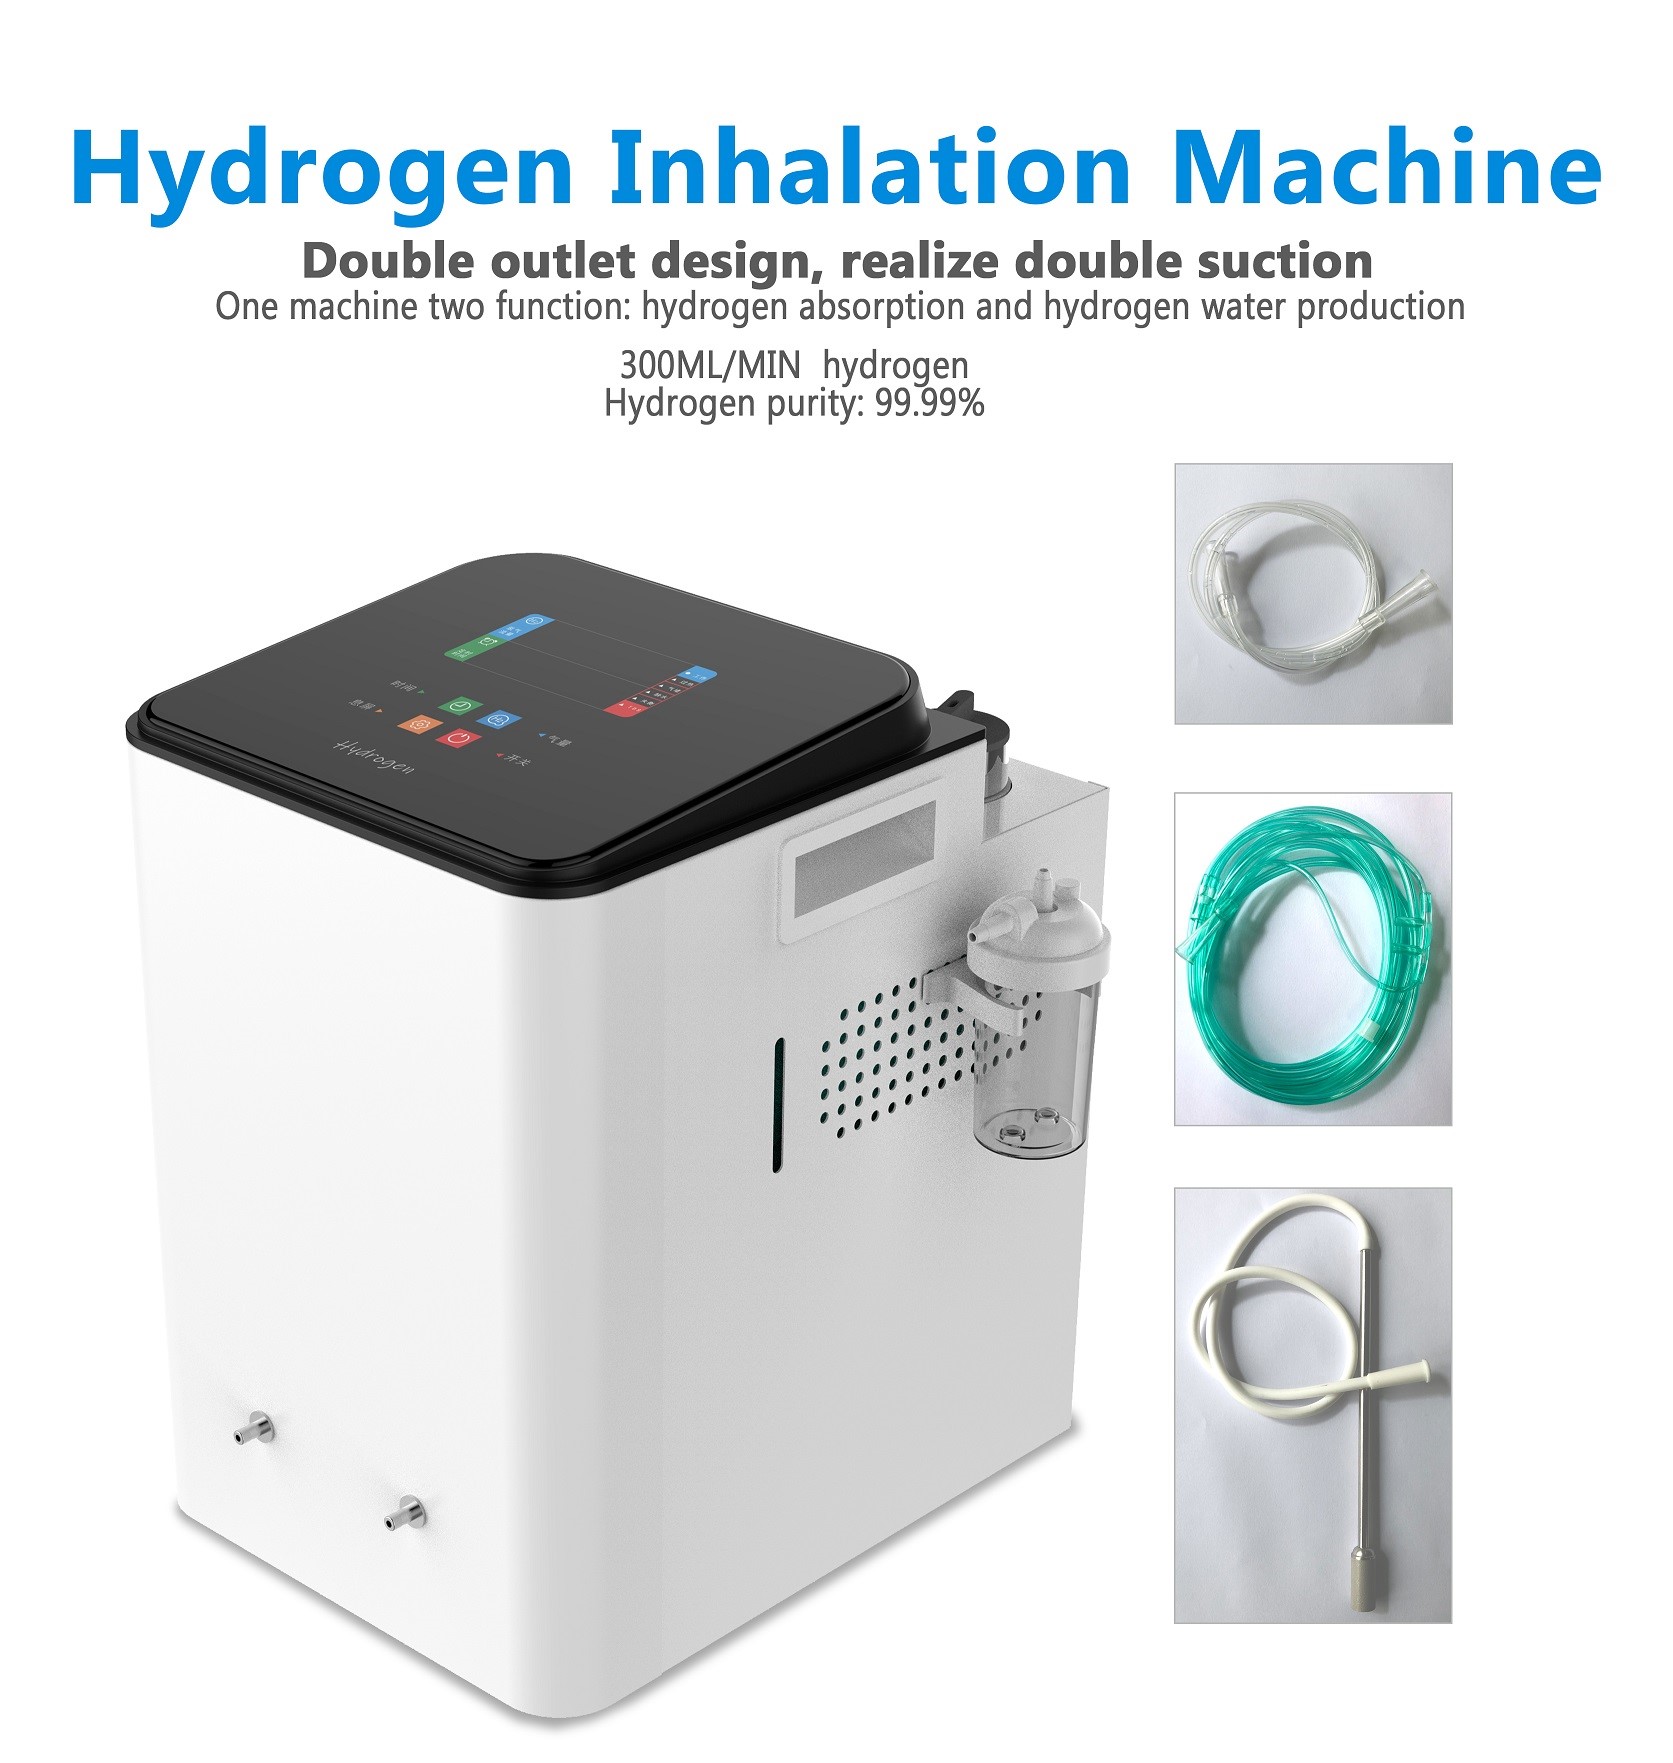 Guia para configurar e usar uma máquina de inalação de hidrogênio